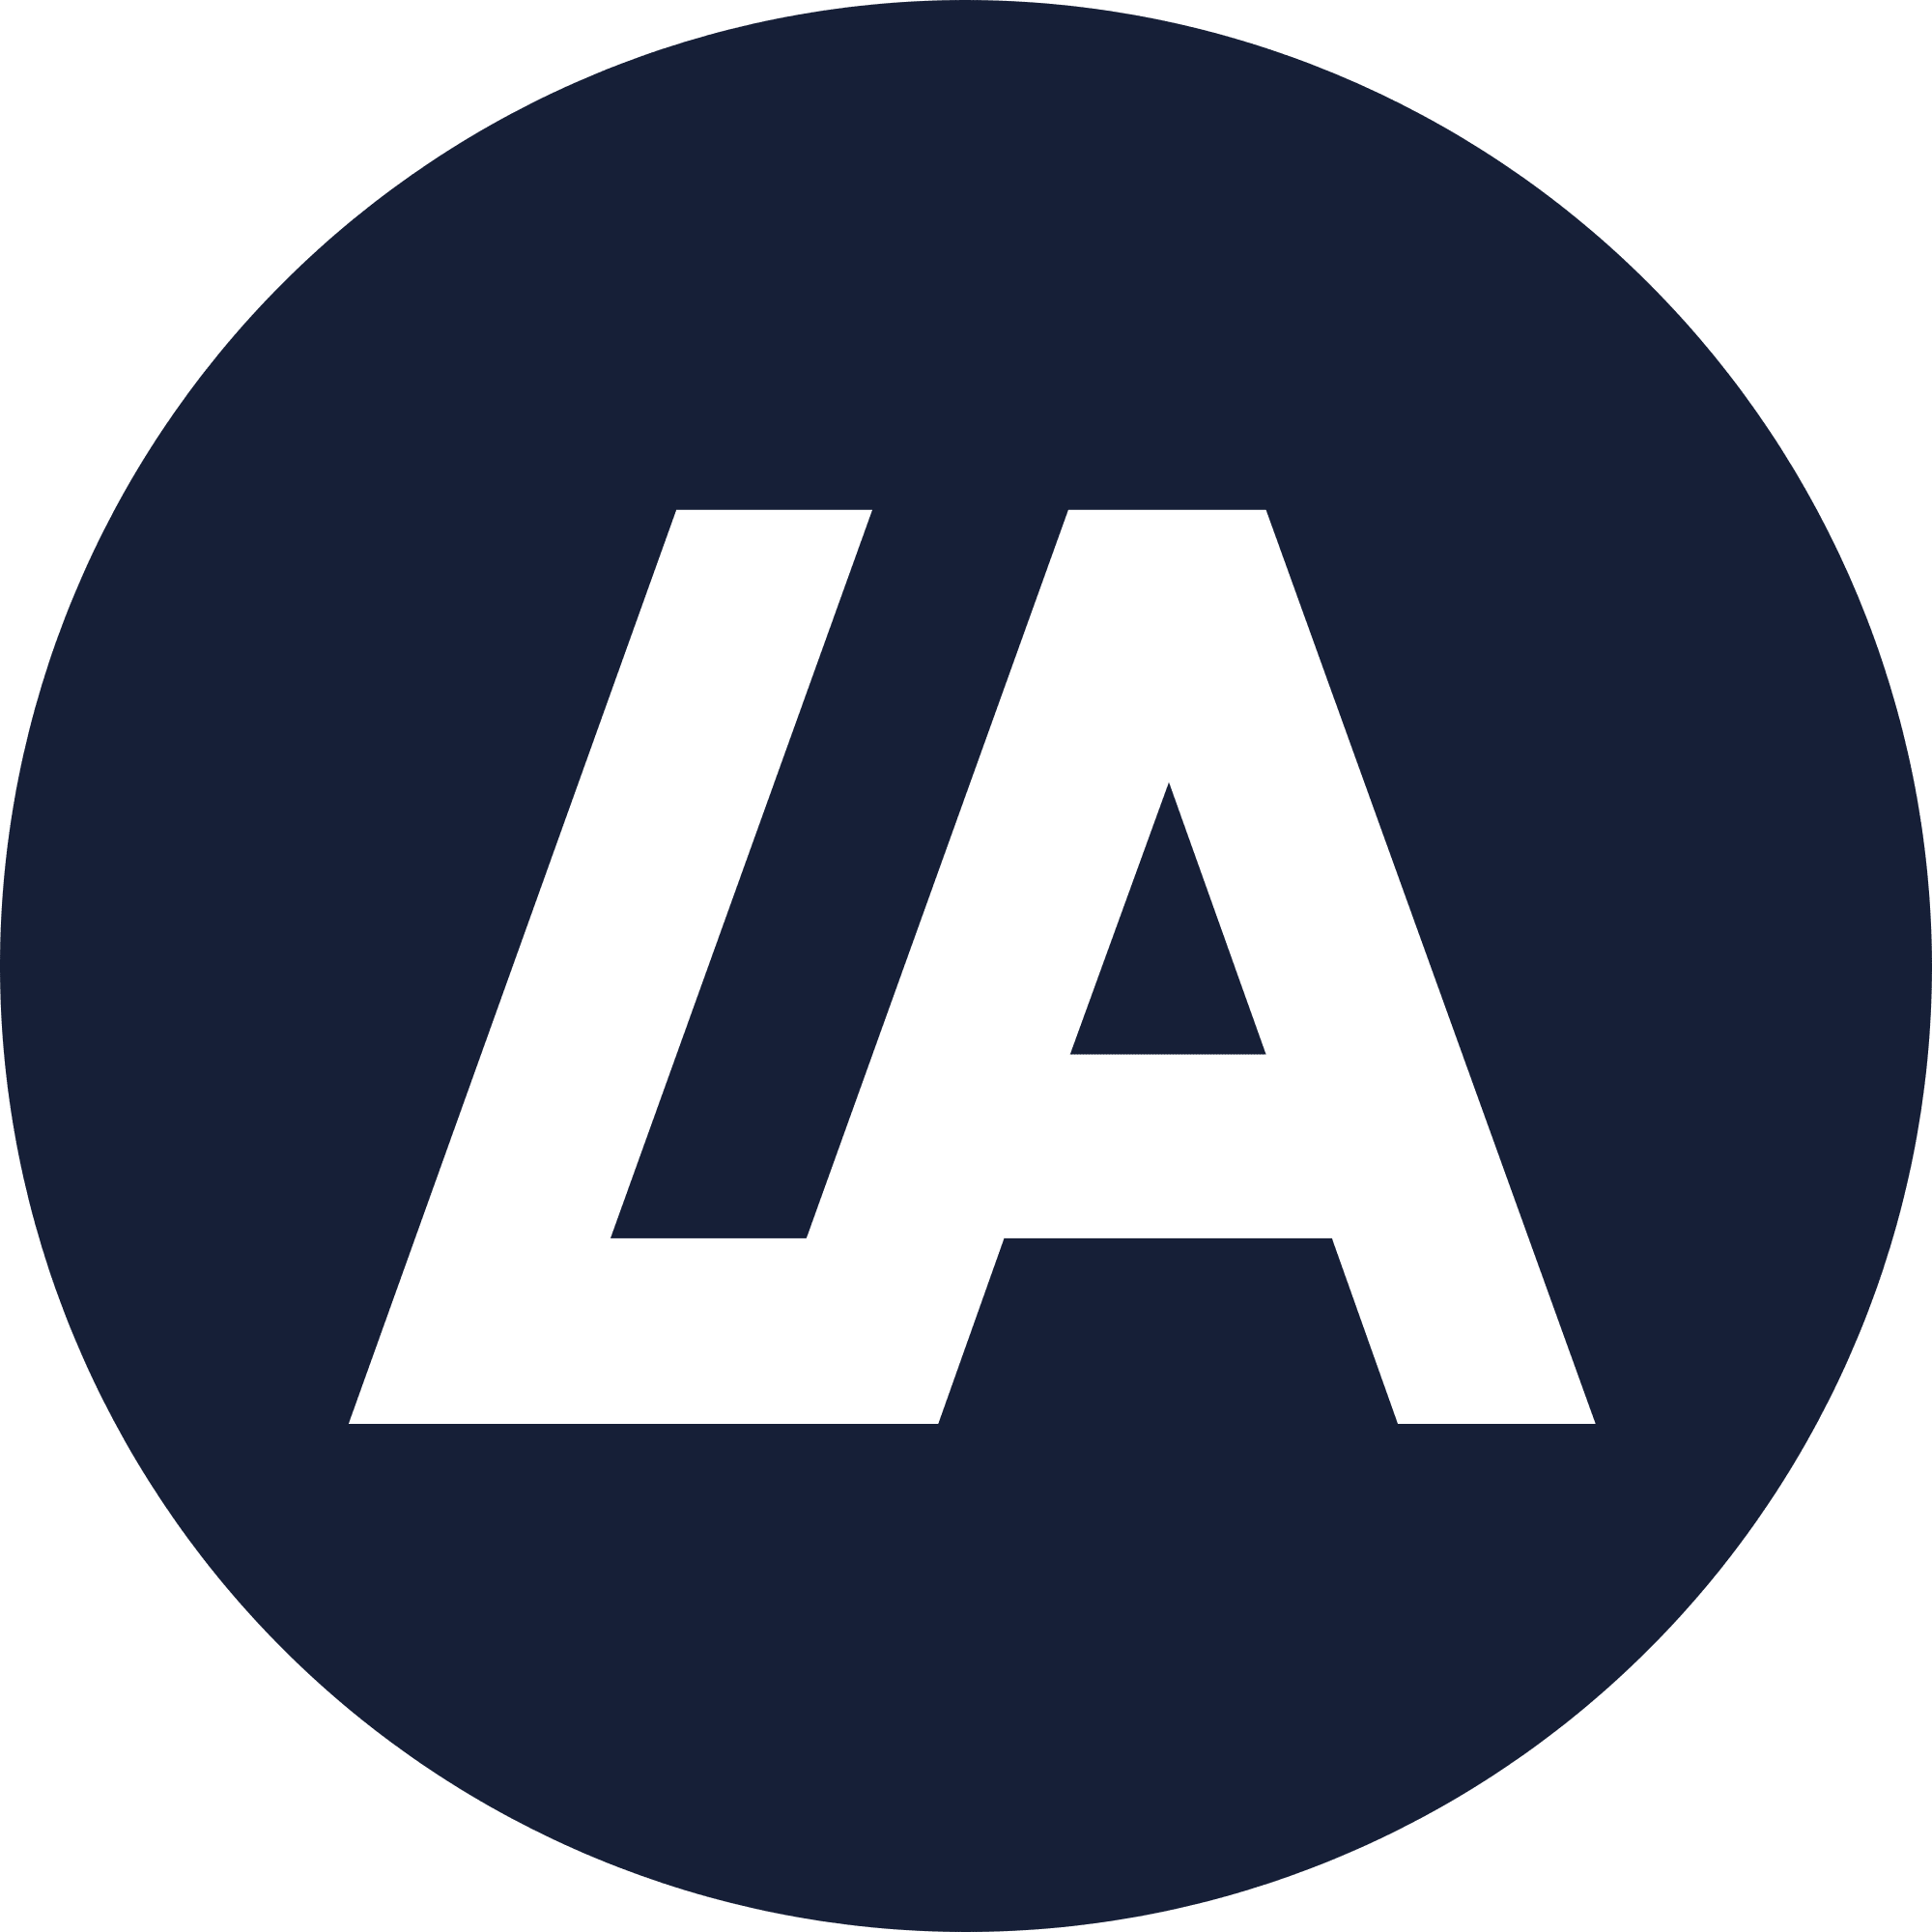 LATOKEN (LA) logo